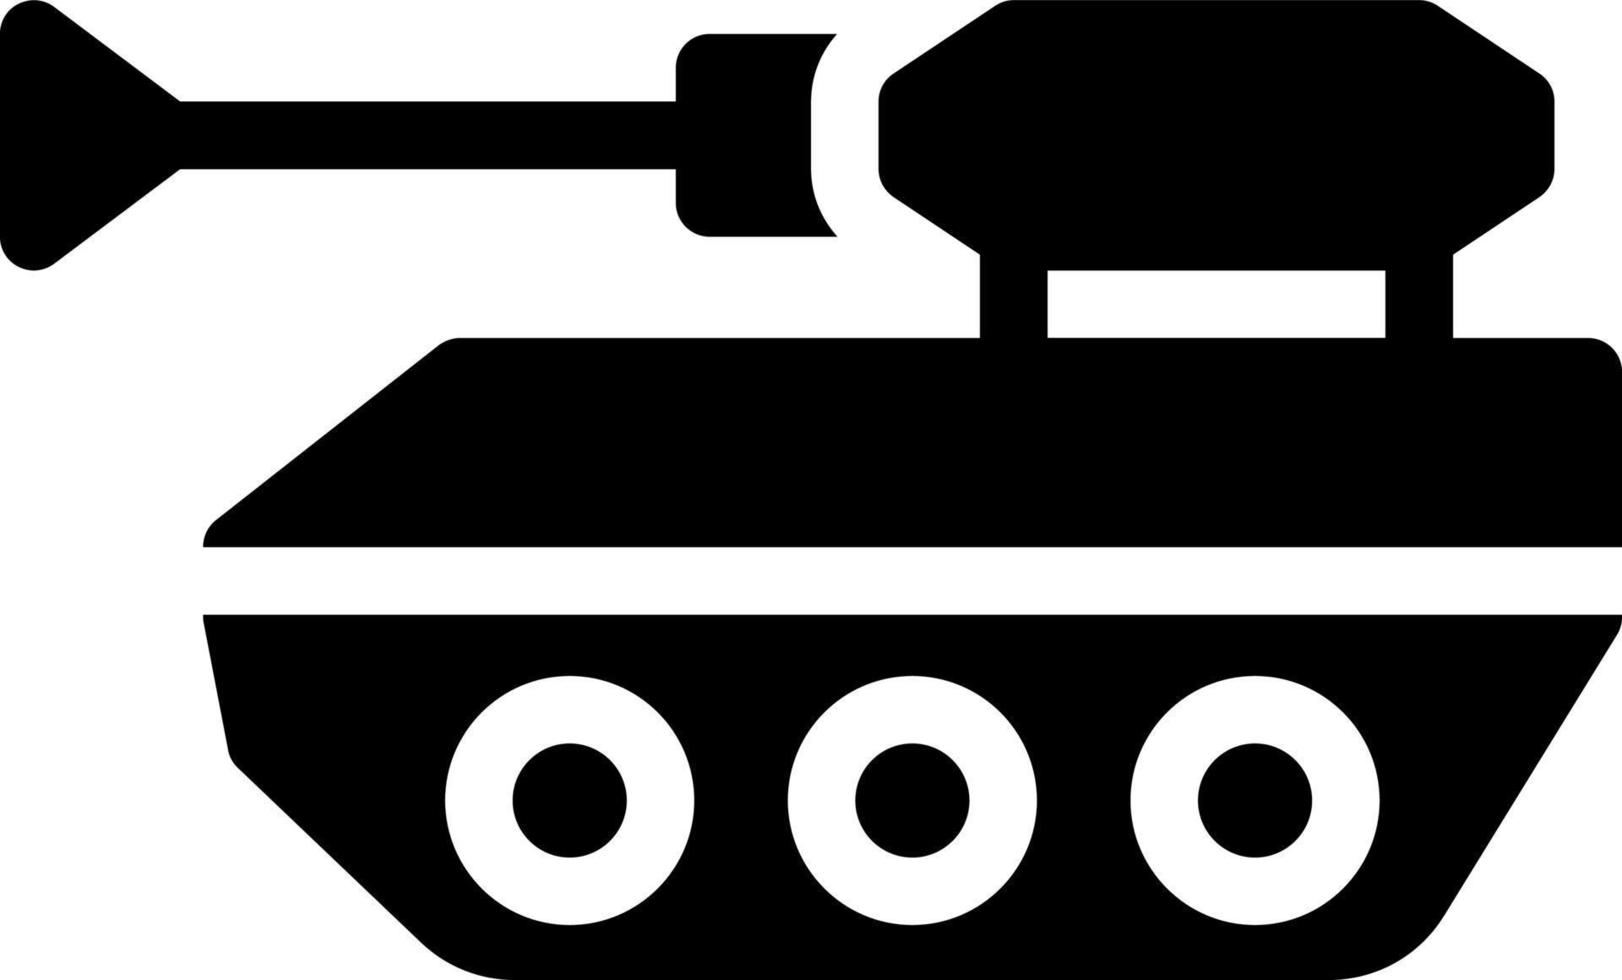 Heer Tanker Vektor Illustration auf ein hintergrund.premium Qualität symbole.vektor Symbole zum Konzept und Grafik Design.